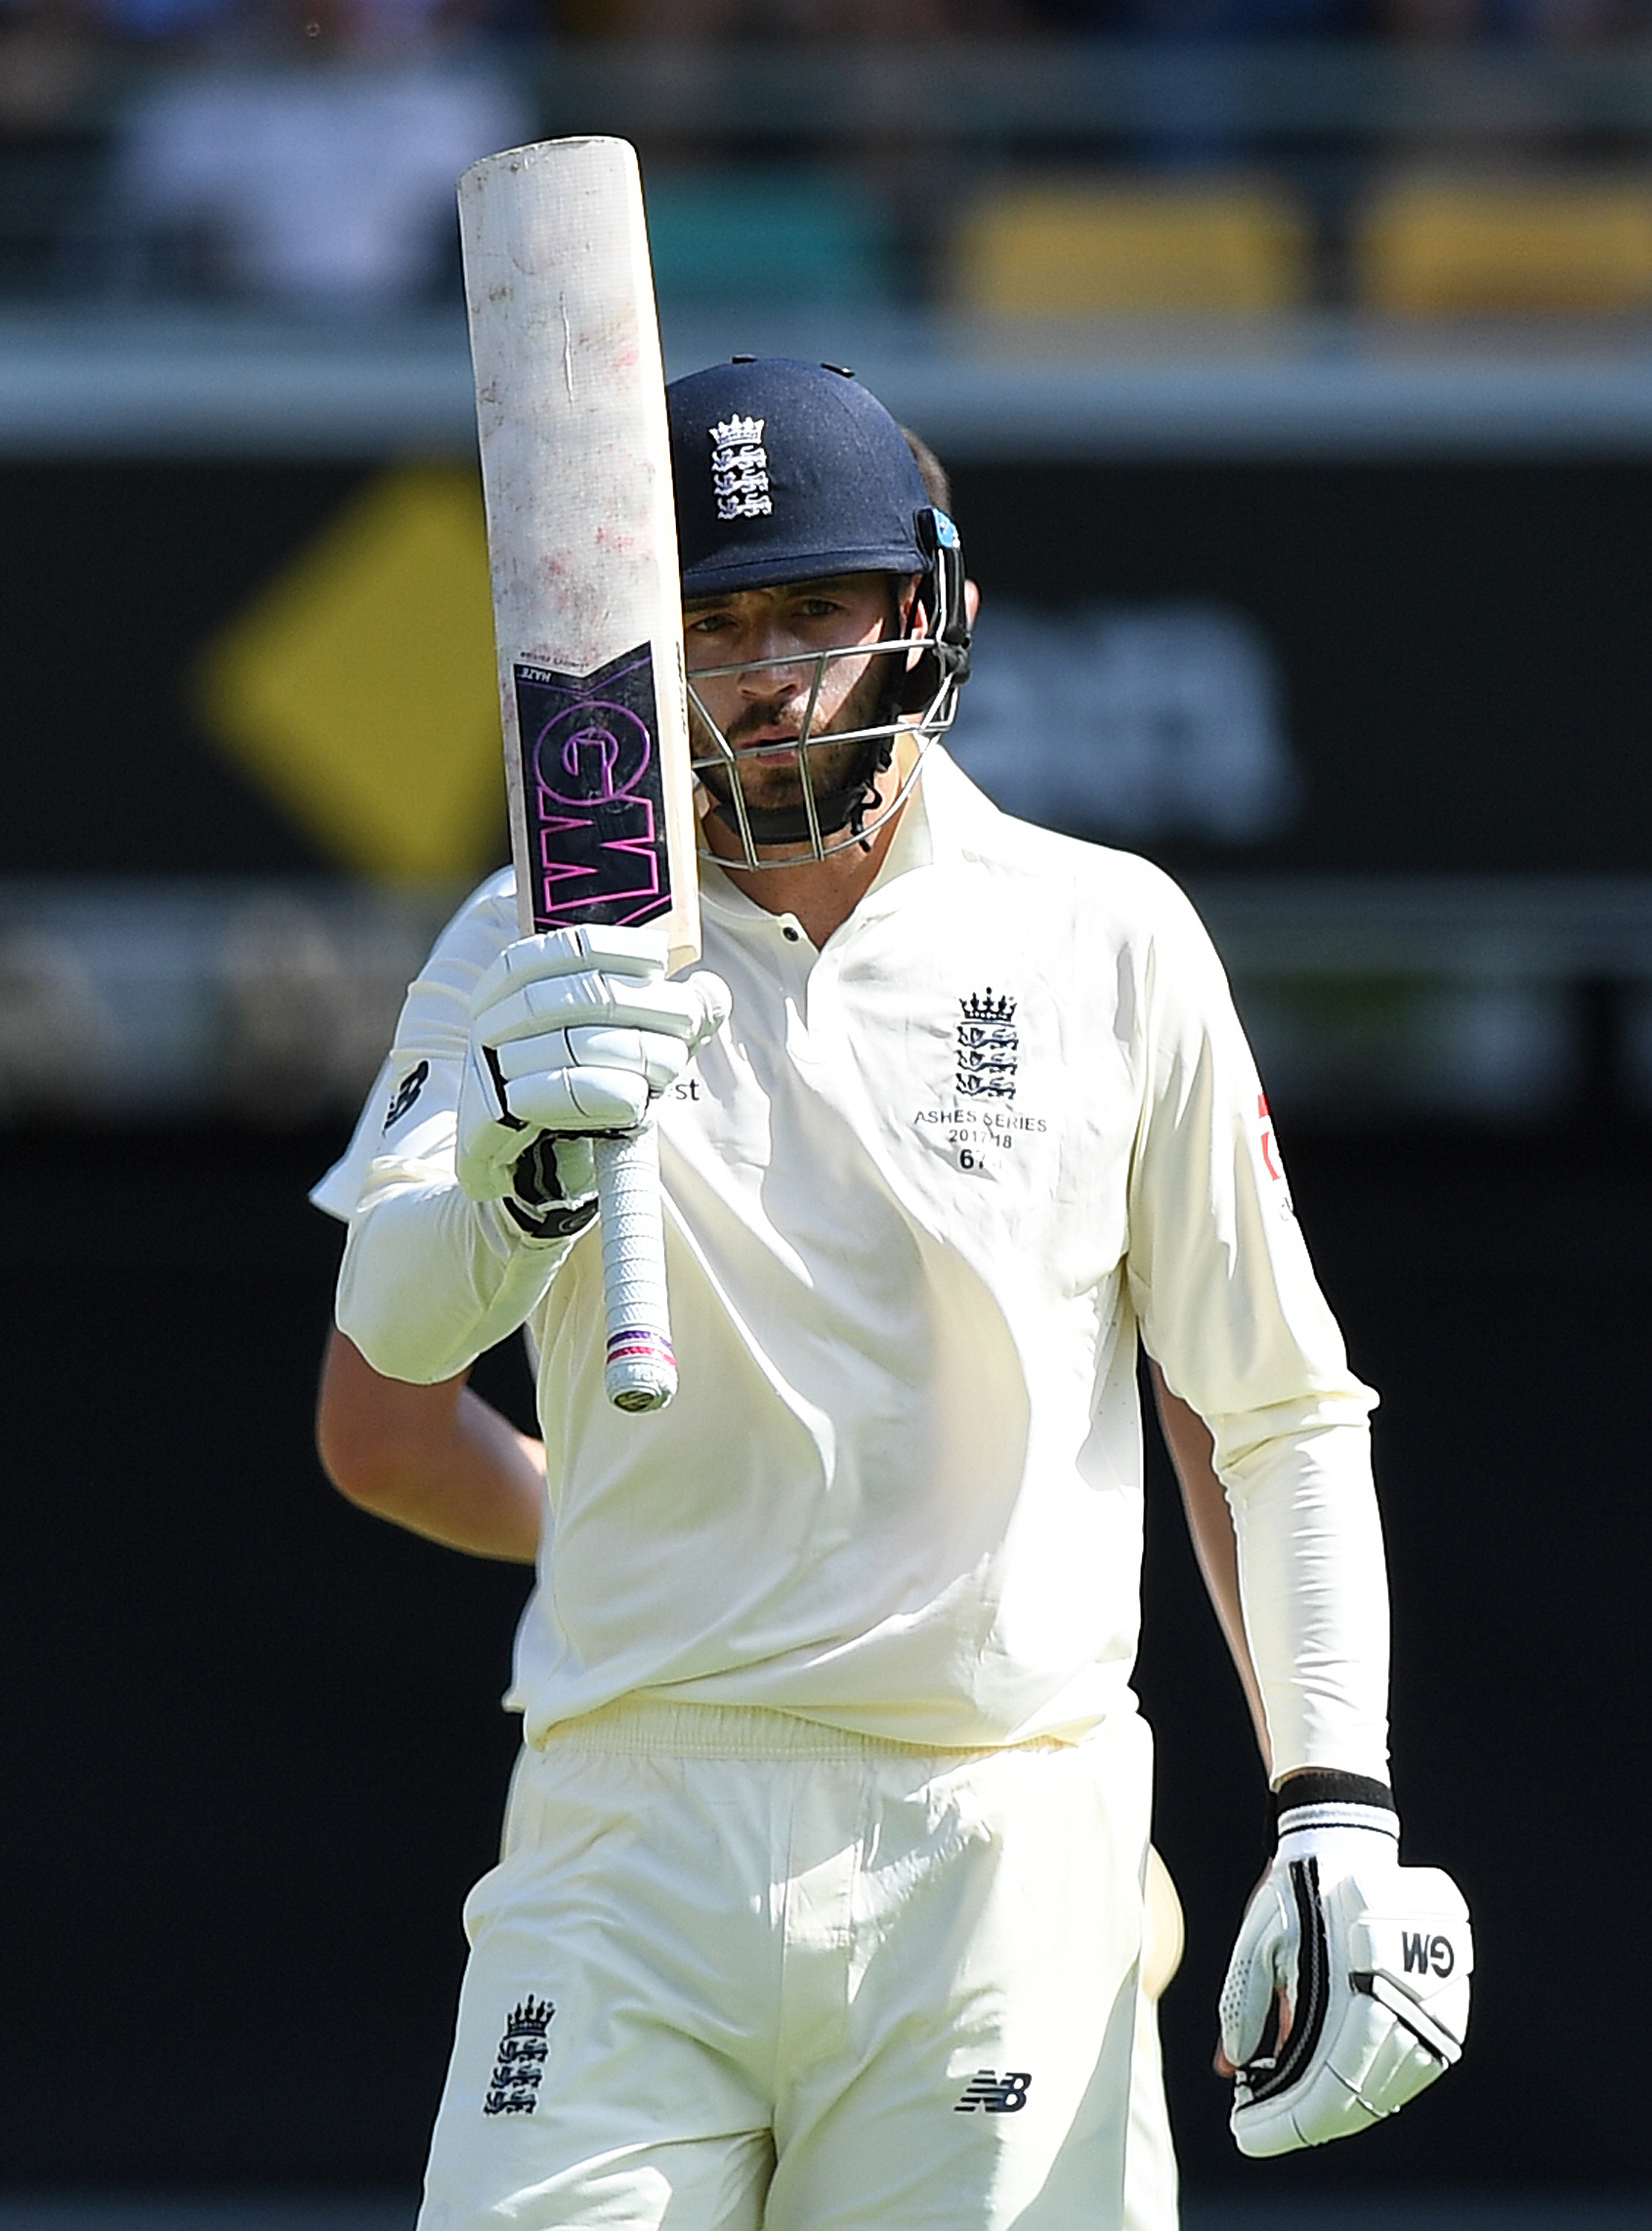 James Vince, First Test Australia v England, Queensland Australia 2017